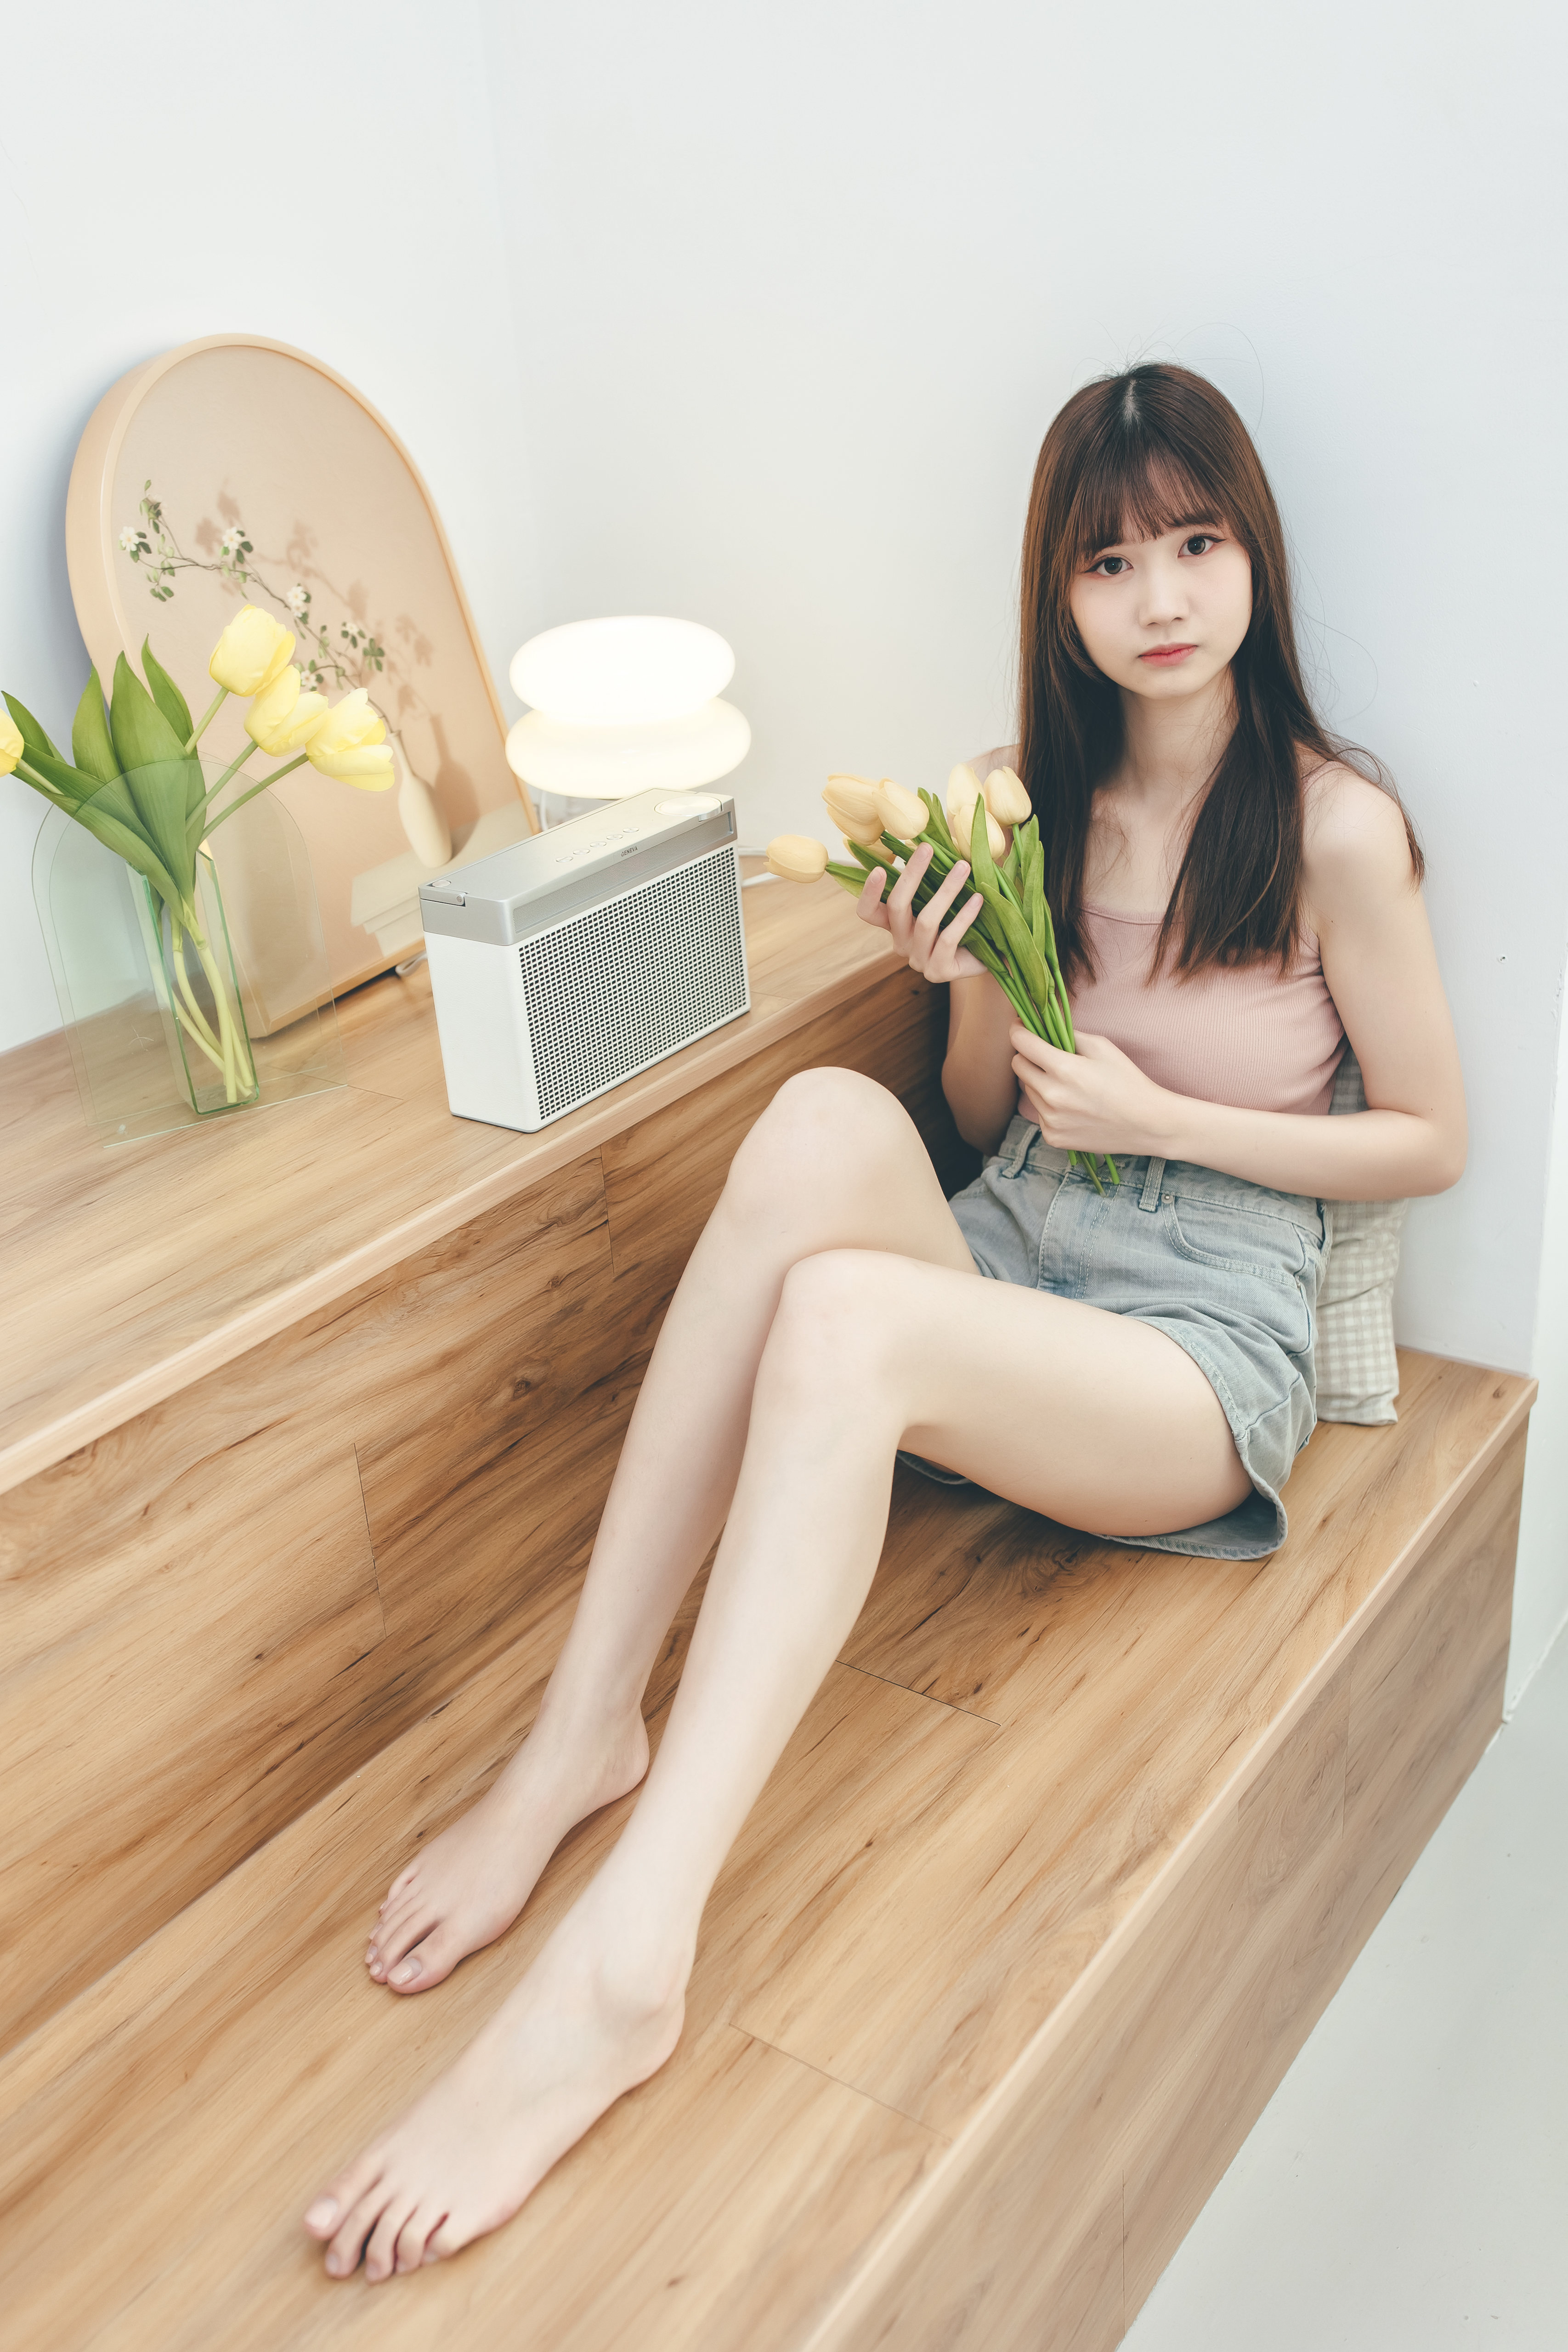 Ru Lin Women Asian Bangs Legs Barefoot Wooden Surface 3413x5120